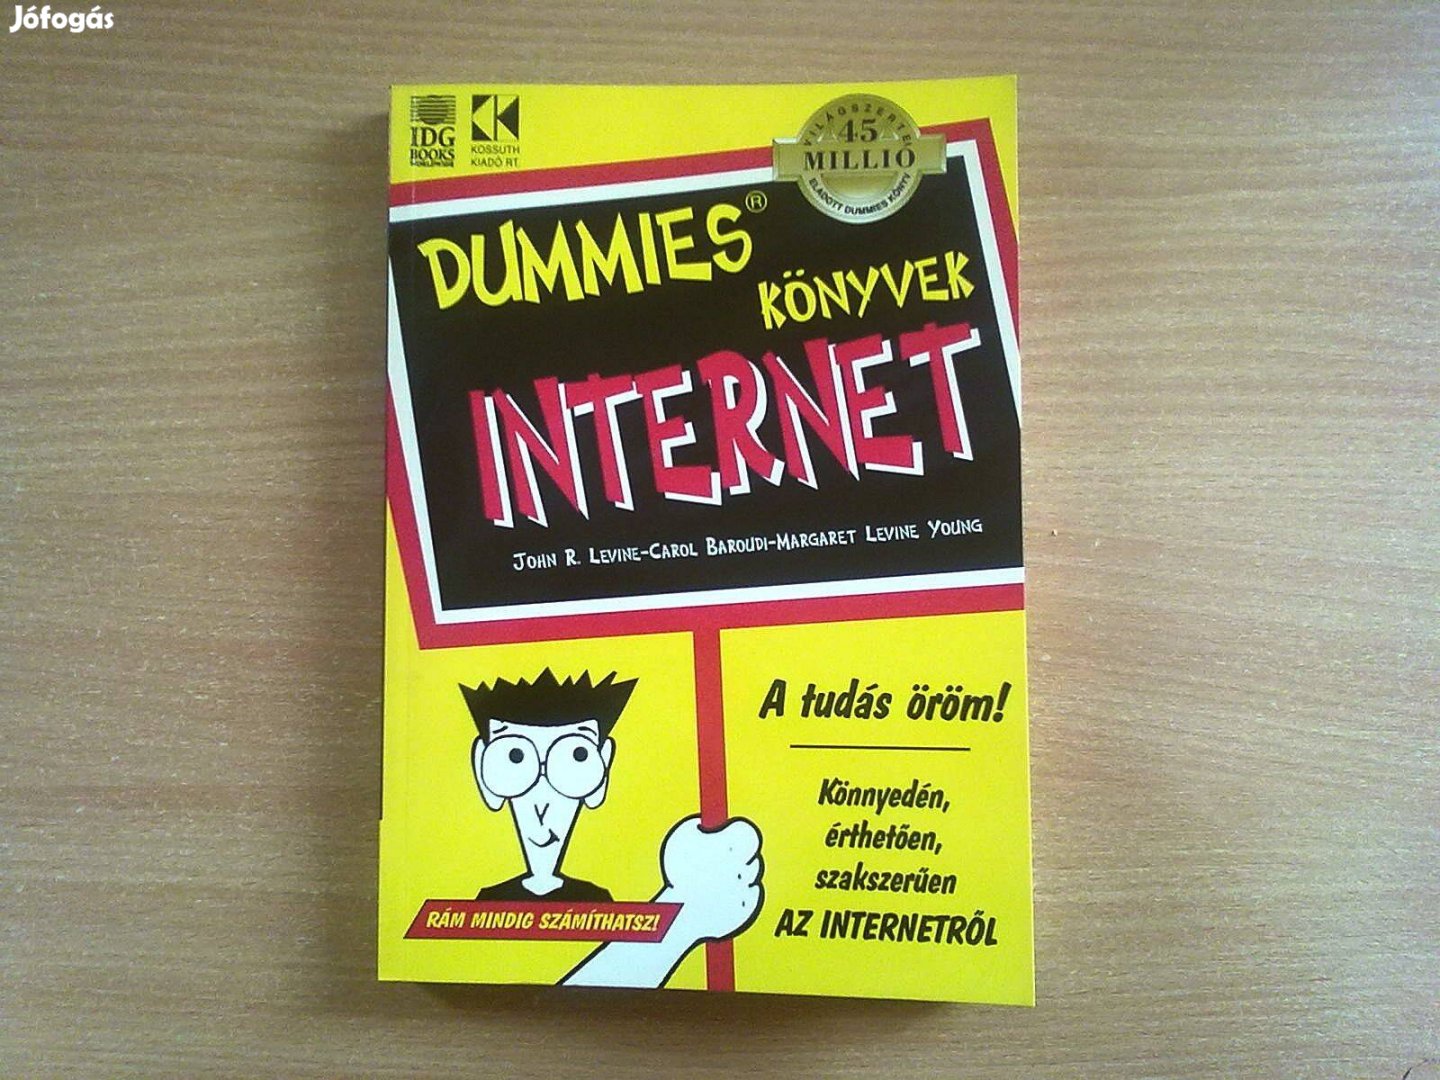 Internet (Dummies könyvek)